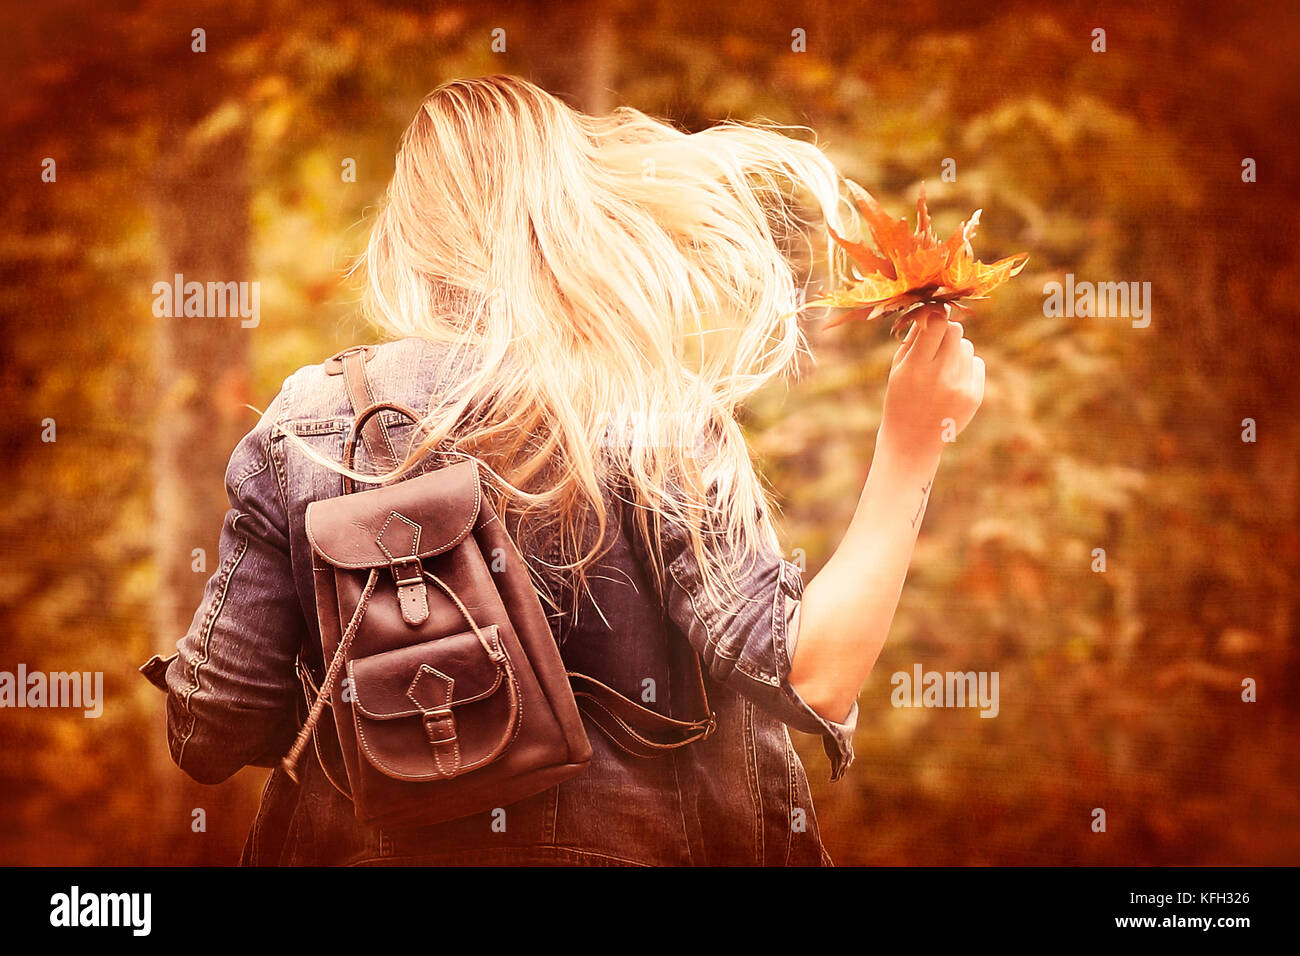 Vintage Style Foto von einer freudigen blondes Mädchen im Herbst Wald runing, Halten in der Hand trockenen Baum Blätter, Spaß im Herbst Park Stockfoto